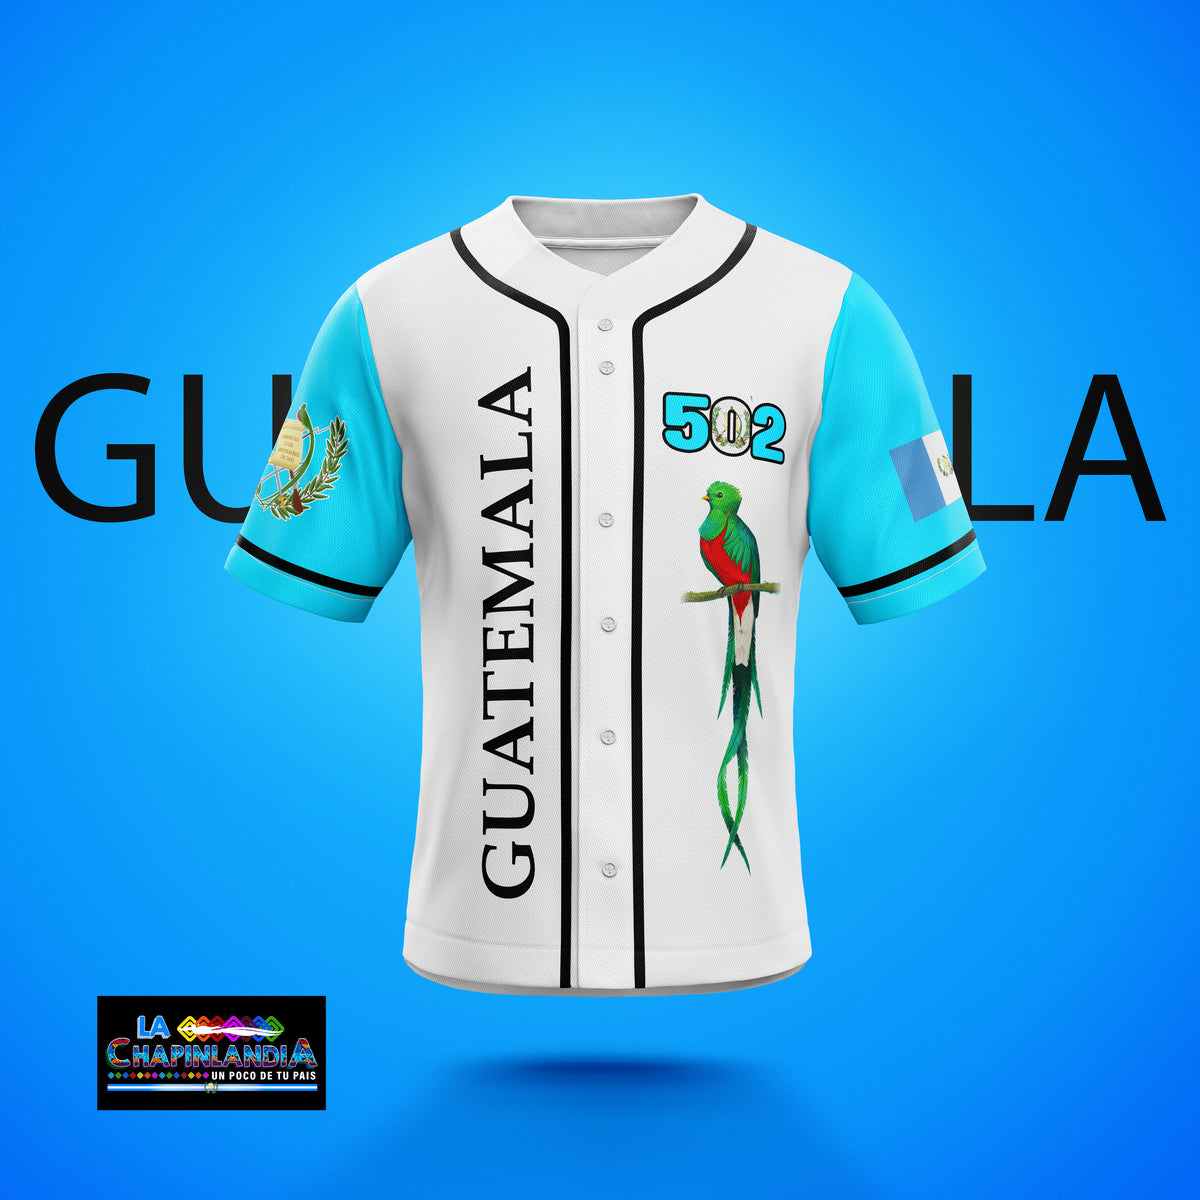 502 Guatemala Baseball Jersey 